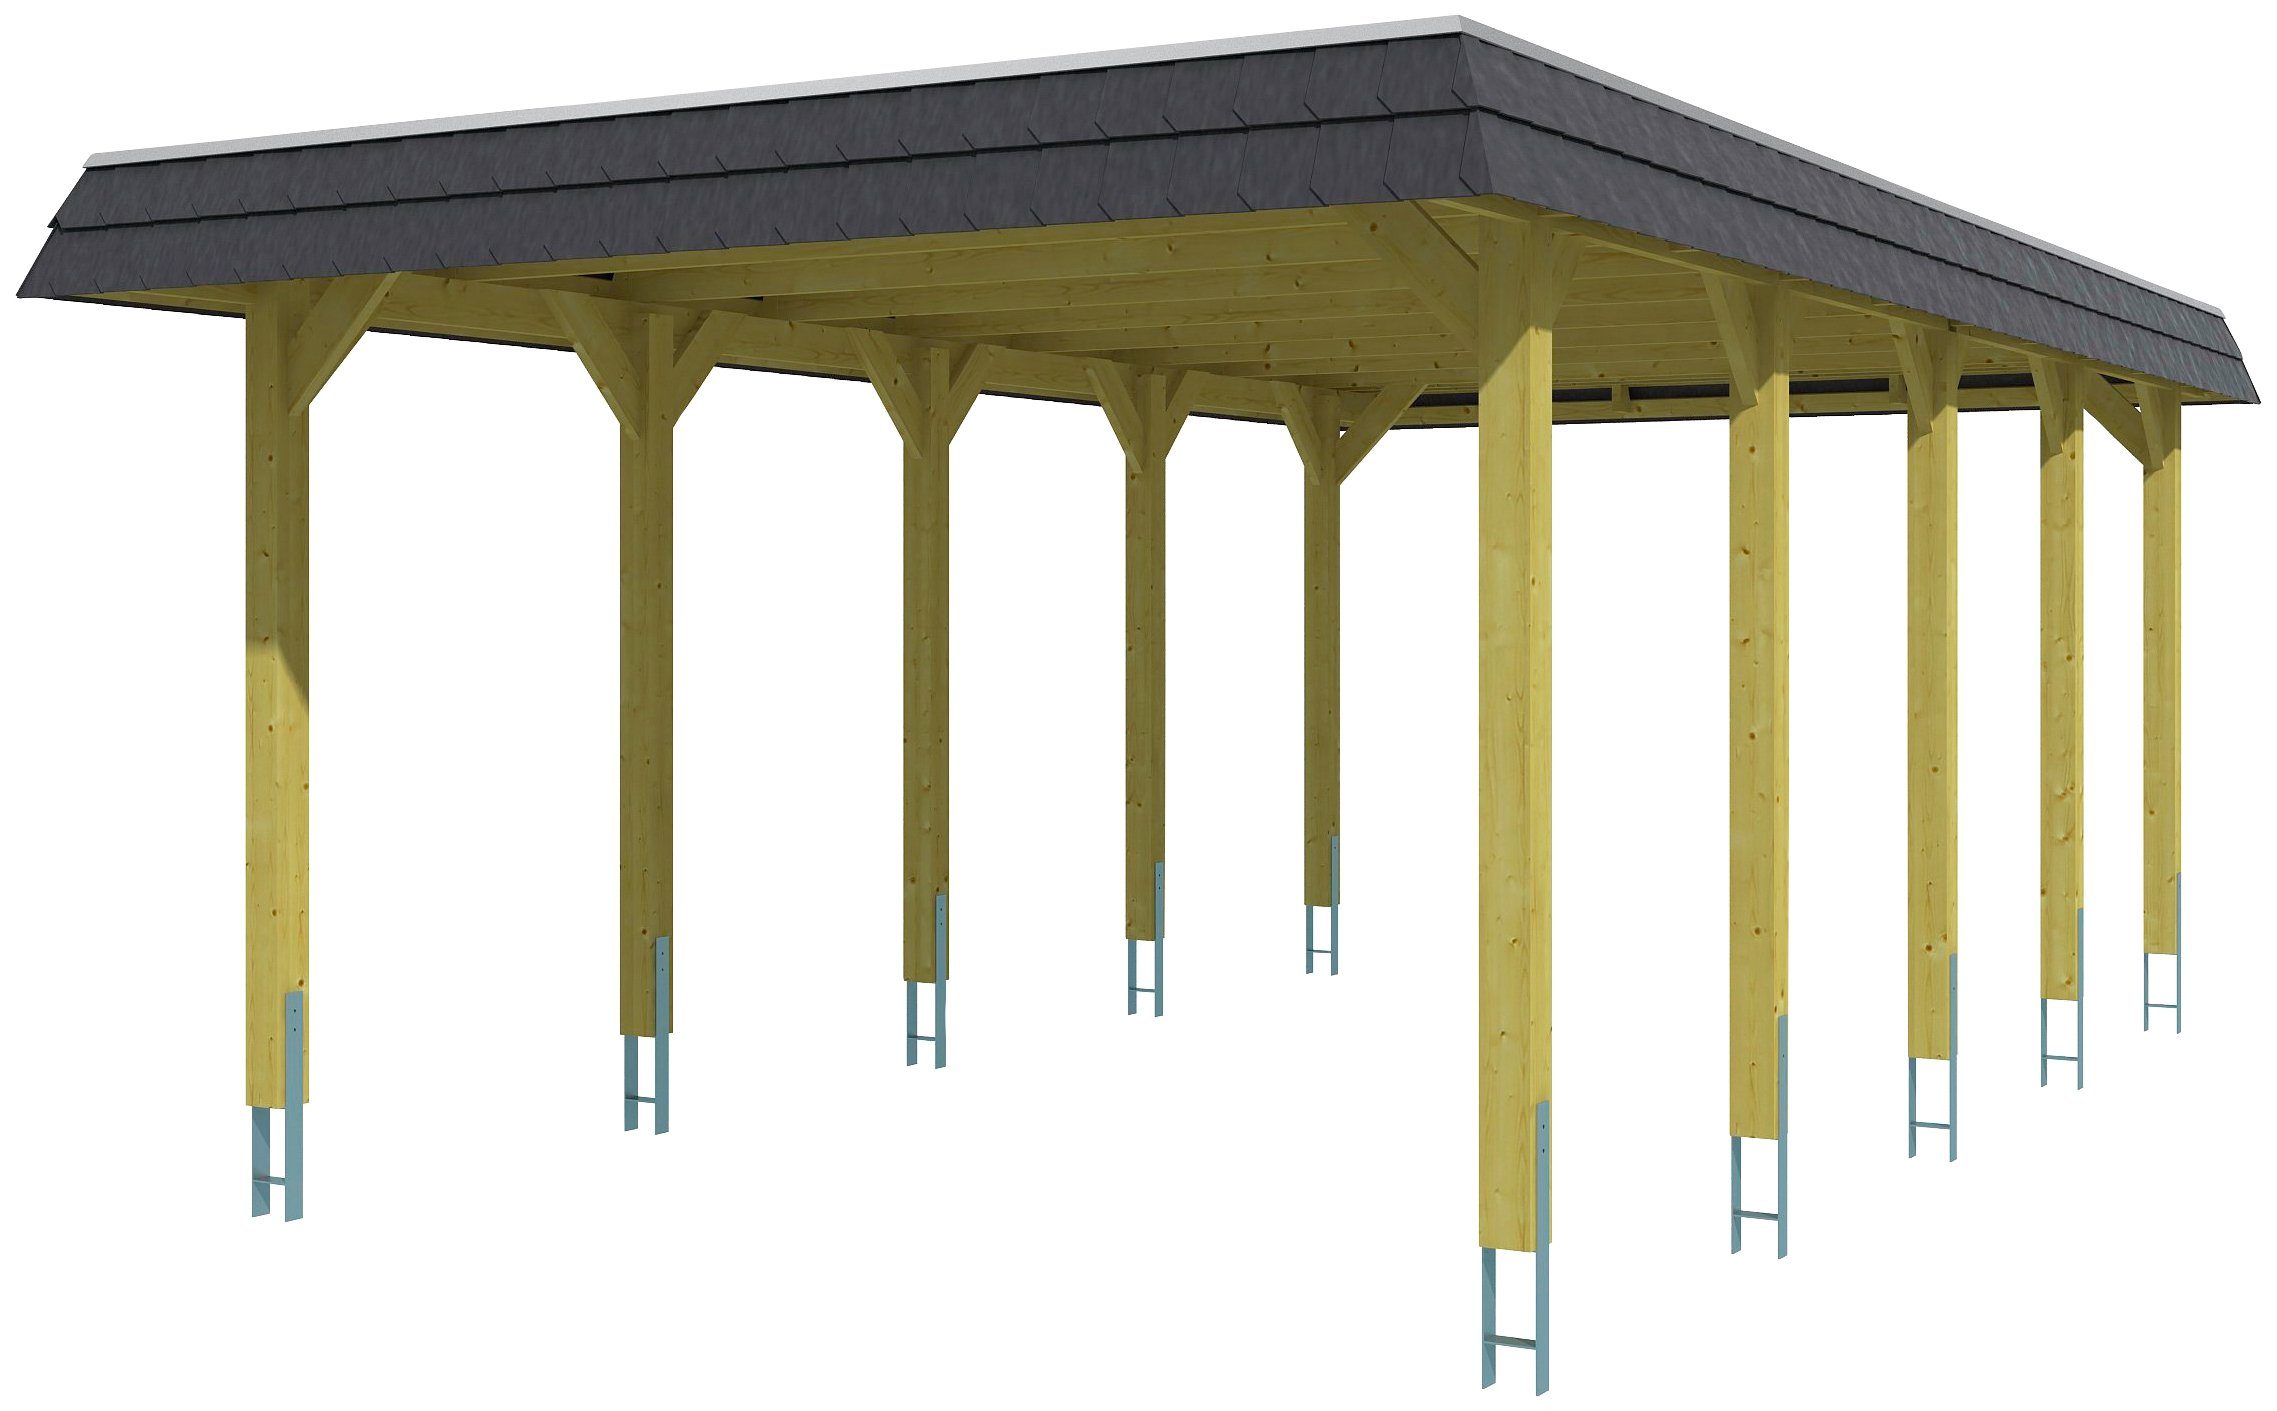 Skanholz Einzelcarport Spreewald, BxT: 396x741 cm, 209 cm Einfahrtshöhe,  Flachdach-Carport mit Aluminium-Dachplatten